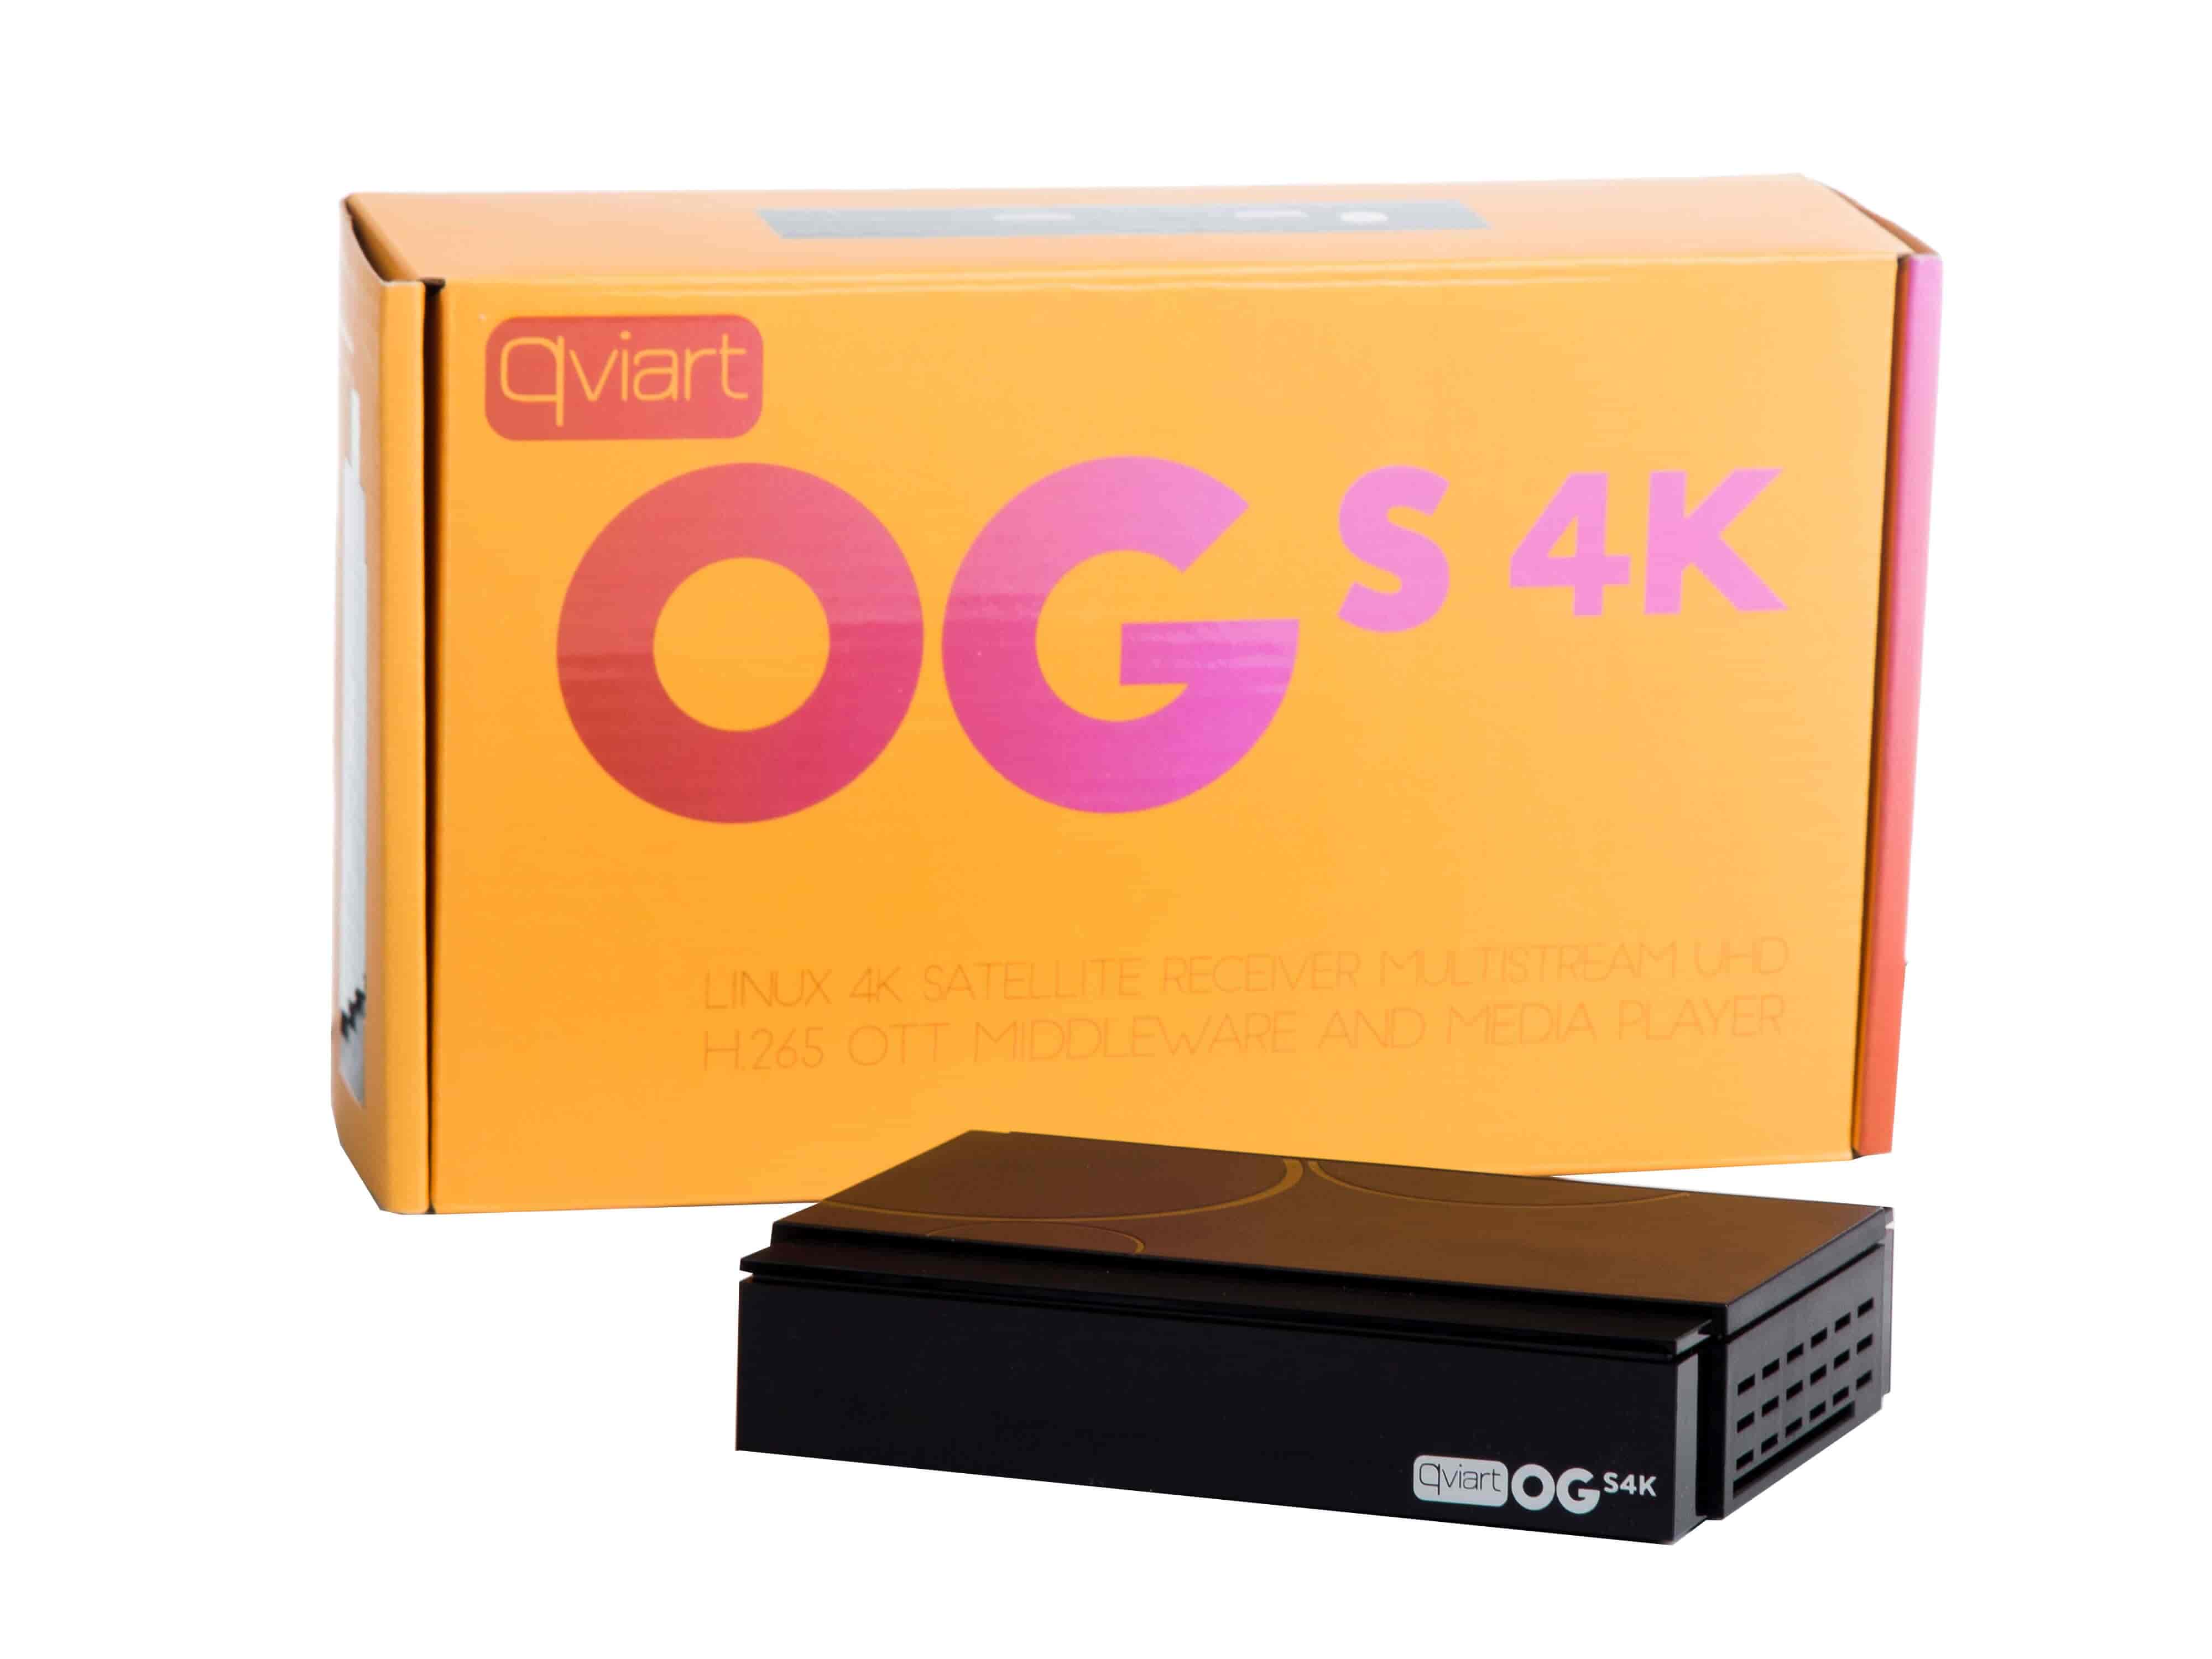 Qviart OGs 4K UHD DVB-S2 - IPTV TV boks - 4K SAT og IPTV i samme boks.QVIART LUNIXIPTV modtagere Sort Qviart OGs 4K er en kraftfuld, stabil, hurtig og brugervenlig 4K UHD DVB-S2 parabolmodtager og IPTV modtager. Qviart OGs Linux Satellite UHD Multistream OTT 4K H.265 mediamodtager er til dig, der ønsker tingene enkle og effektive i en full 4K IPTV DVB-S2 Set Top Box - til en super skarp pris. Qviart OGs 4K byder på en lang række features eksempelvis import og eksport af Enigma2 kanallister, EPG, Auto fast scan, PVR mulighed og timeshift. På IPTV siden finder du den nyeste QTV Online TV (Stalker) applikation samt Xtream og M3U. Flere IPTV-funktioner garanterer den fulde IPTV-oplevelse i denne lille, men kraftfulde boks,som også understøtter applikationer som Netflix, Amazon prime, YouTube osv. Kombineret 4K UHD DVB-S2 SAT modtager og IPTV TV boks i 4K udgave - til en super pris.